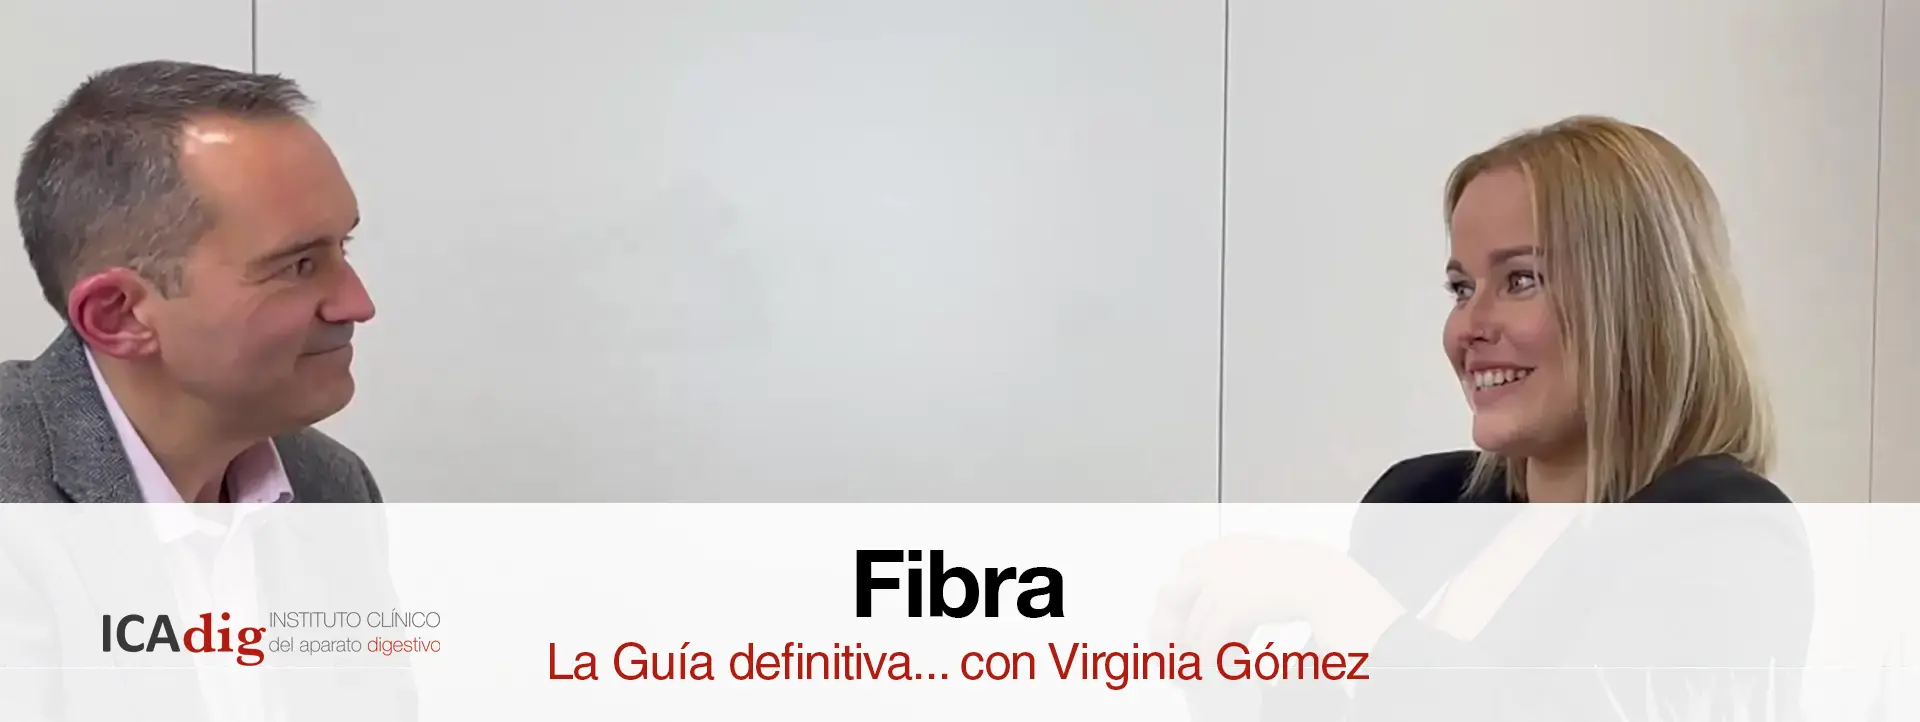 Fibra La guía definitiva Virginia Gómez icadig